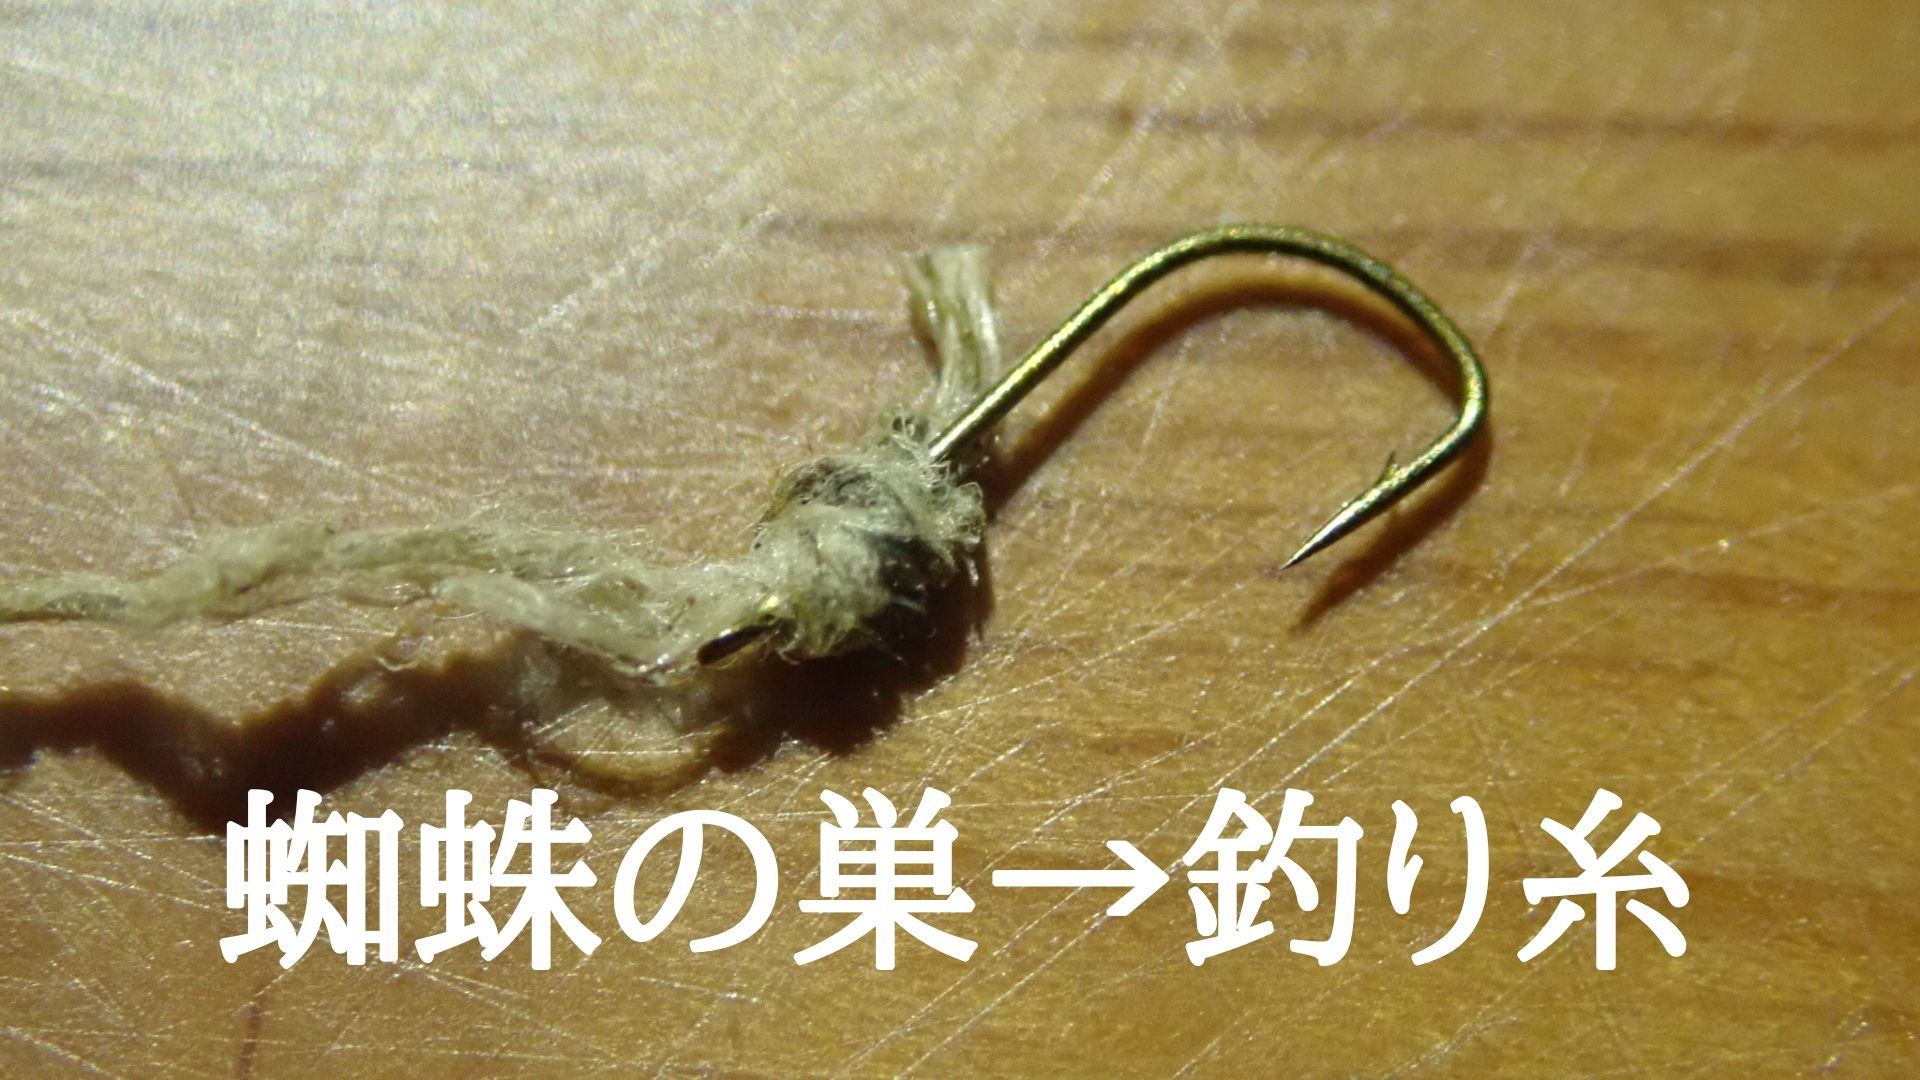 クモ ジョロウグモ の糸から作った釣り糸で魚を釣ってみた 作り方の解説付き 隠者ガリオの自然日記